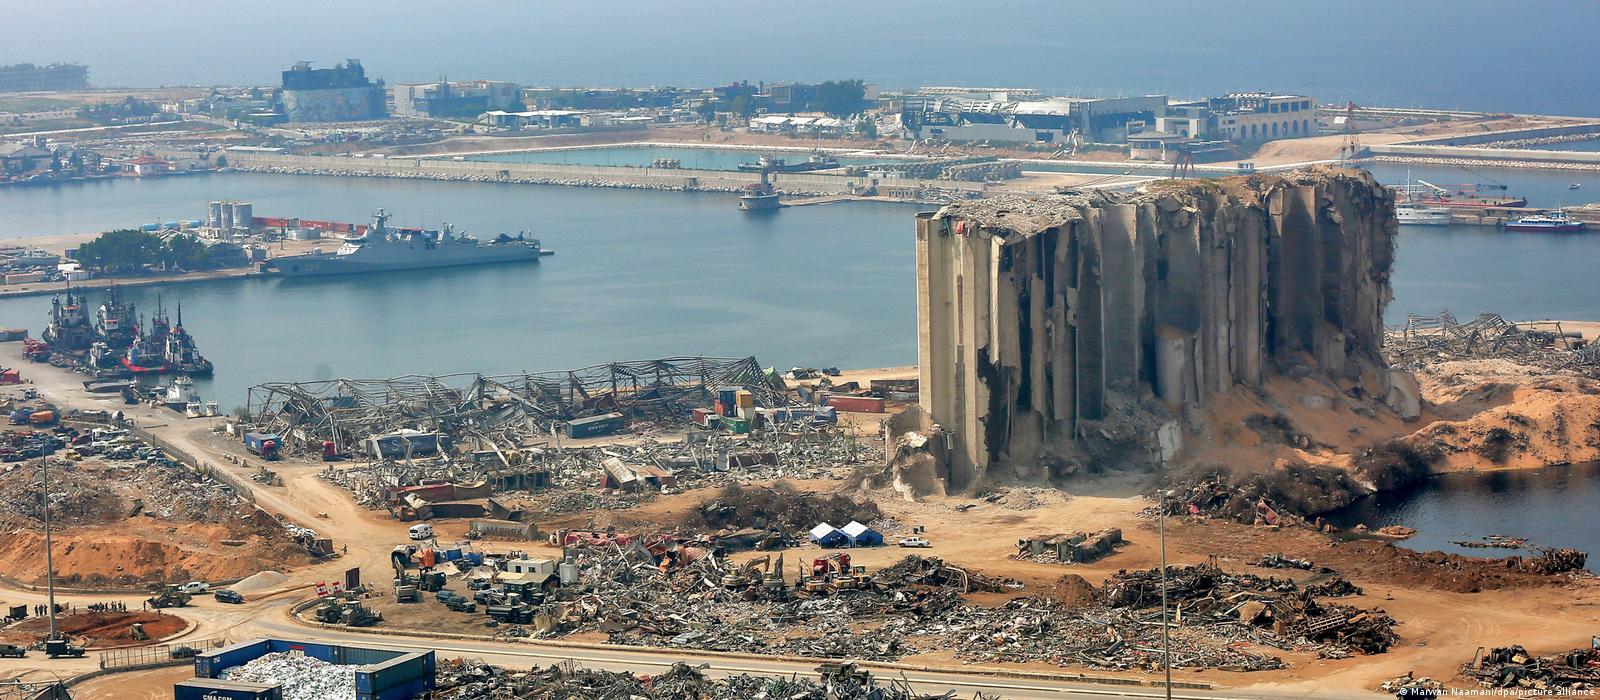 Beyrut Limanı'nda yaşanan patlamanın ardından bölgenin durumu - (04.08.2020)